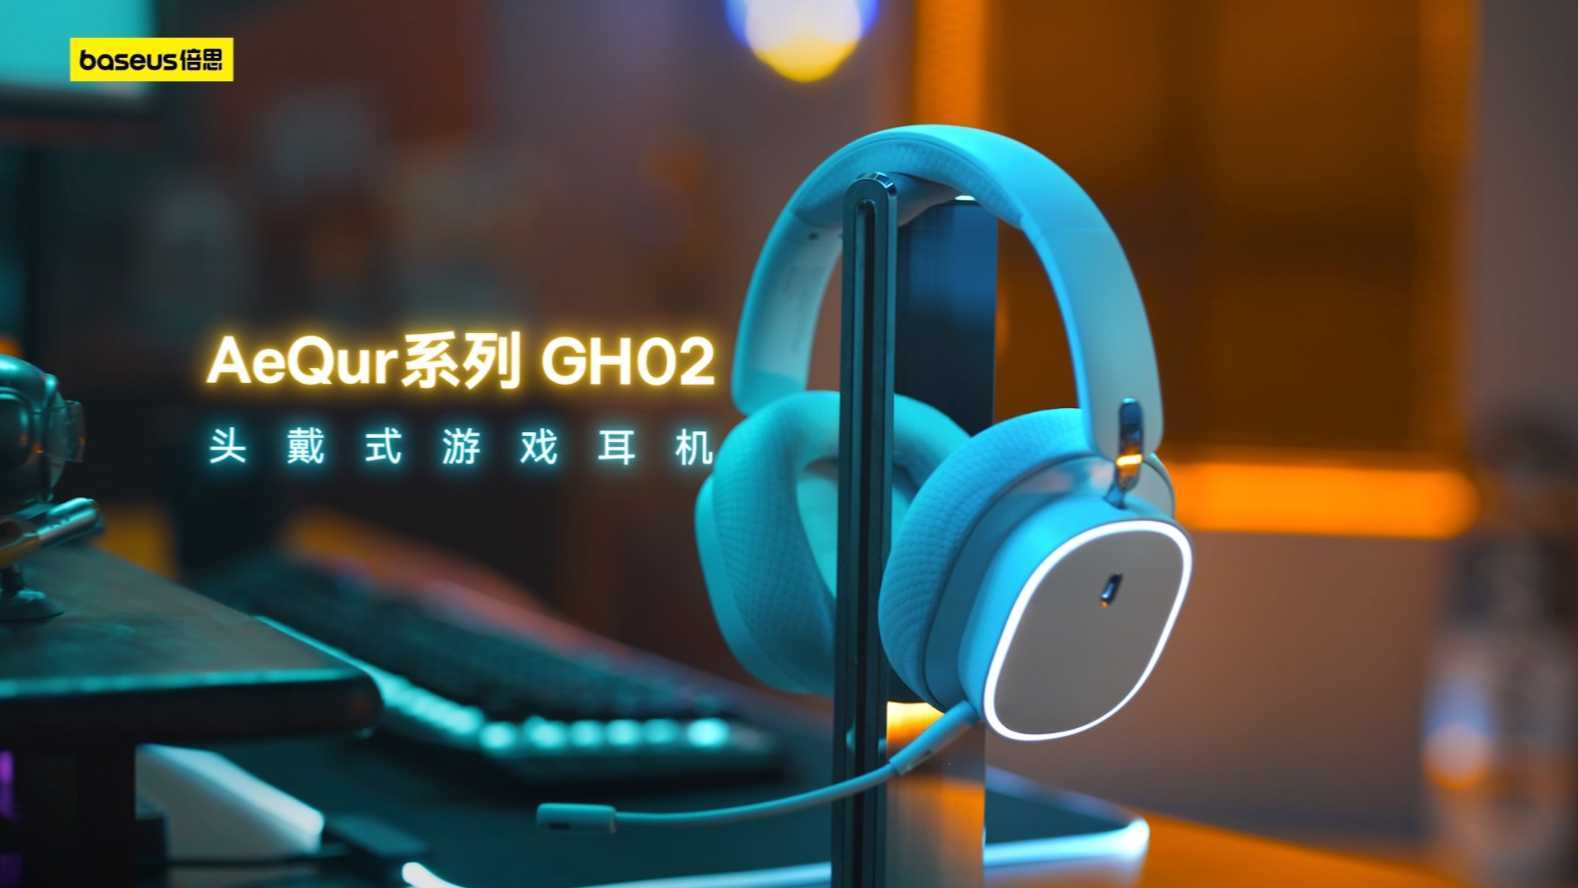 倍思 AeQur系列 GH02 头戴式游戏耳机产品视频